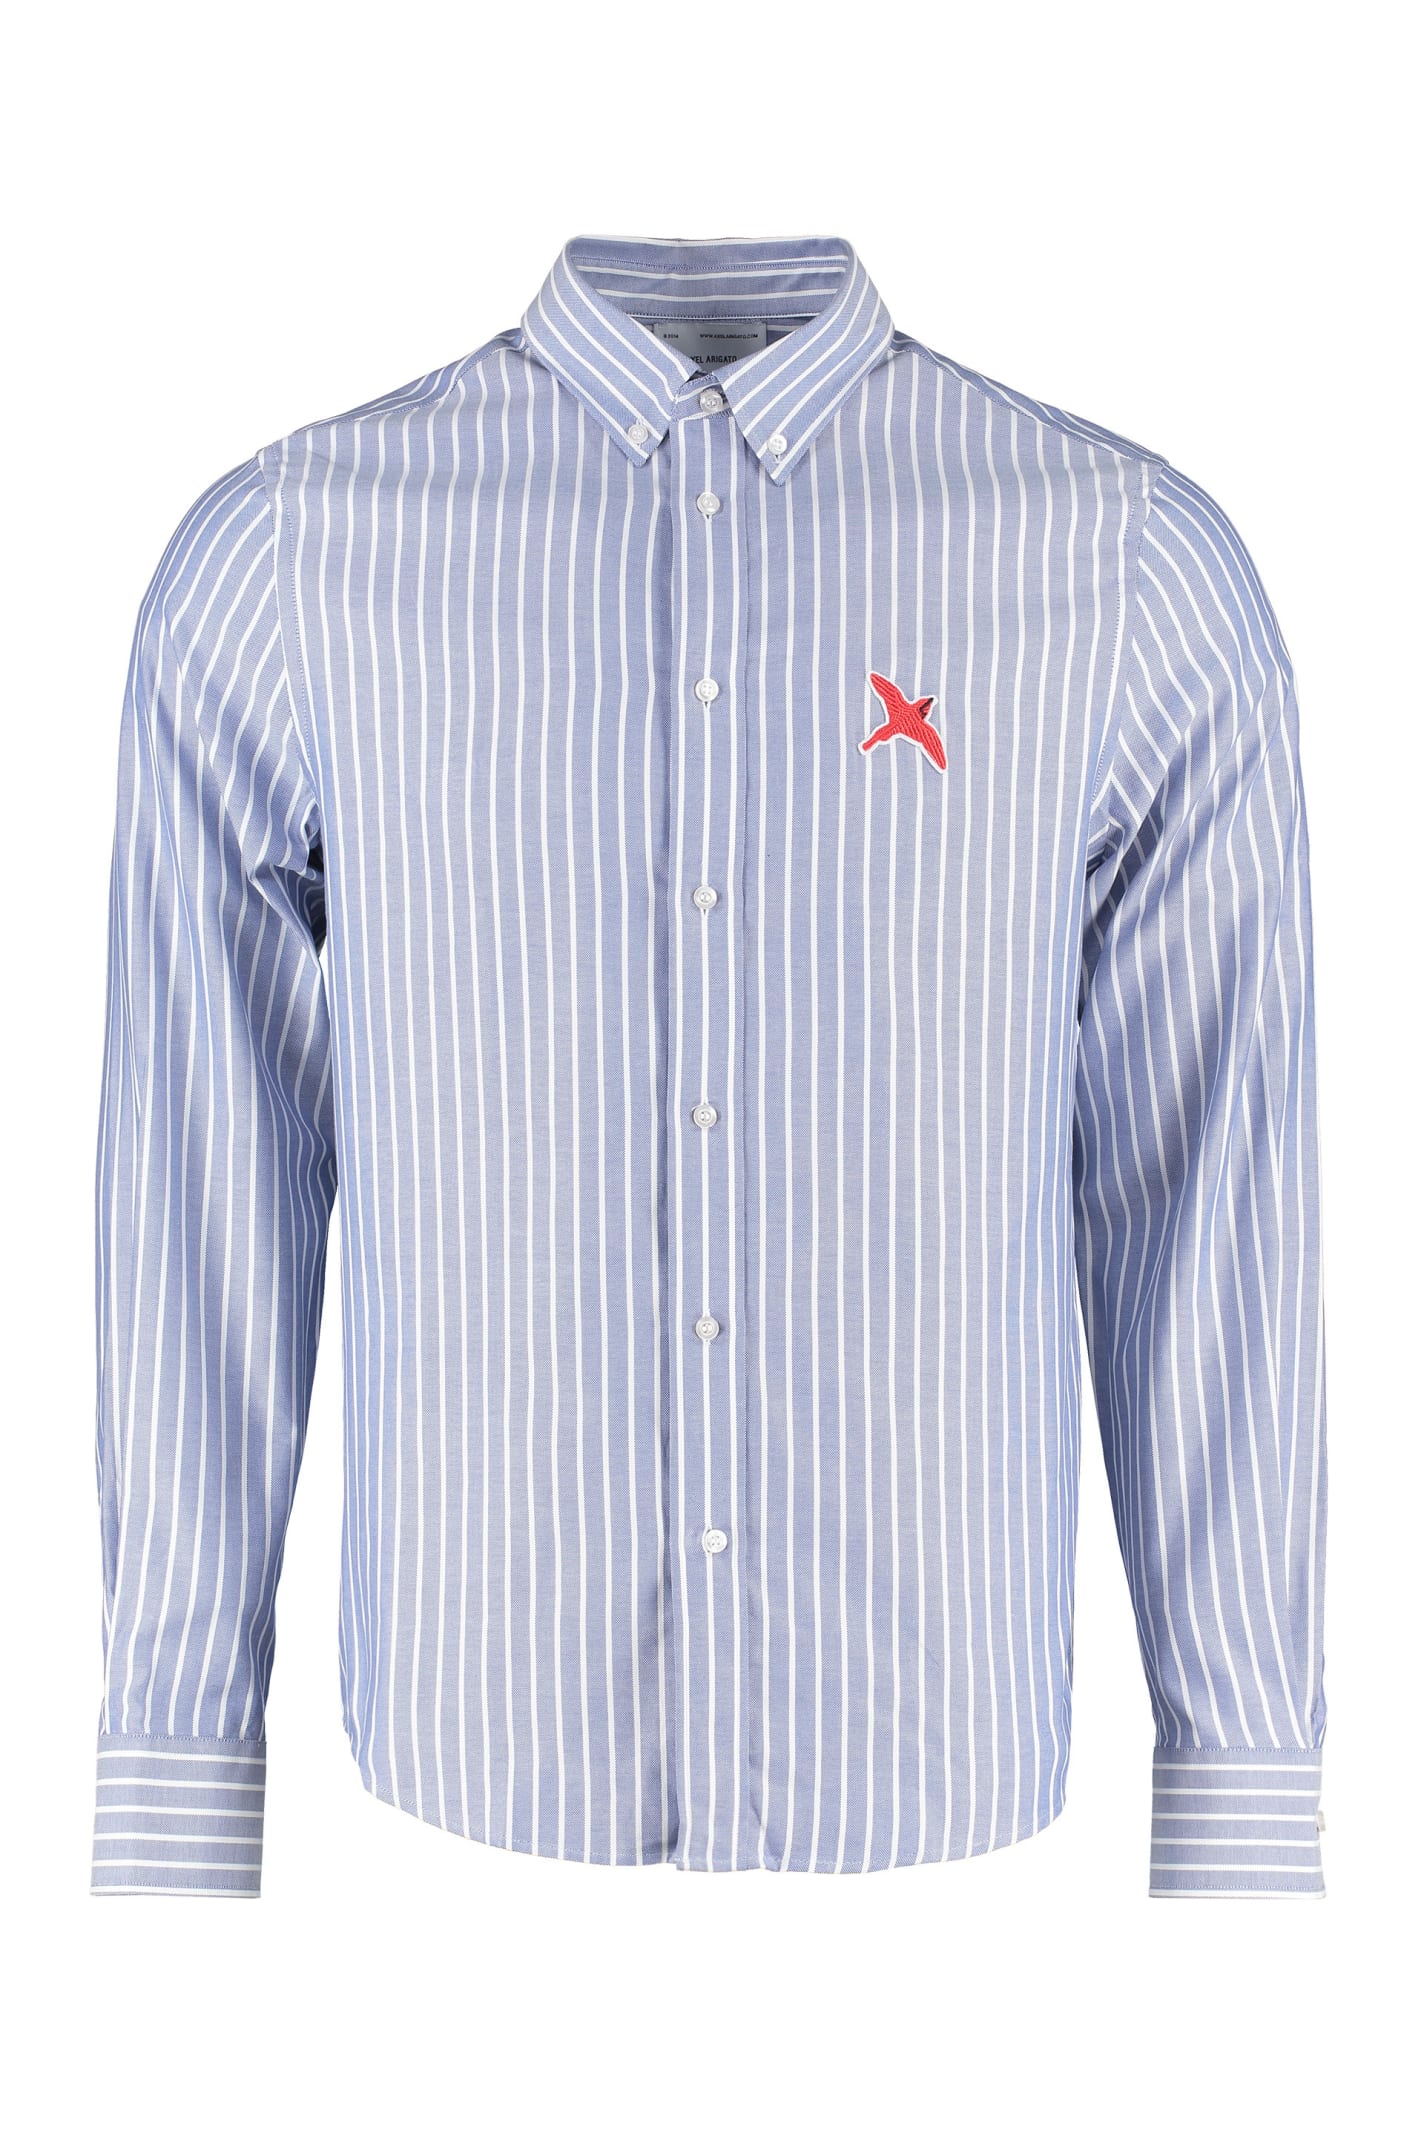 Axel Arigato Cotton Button-down Shirt